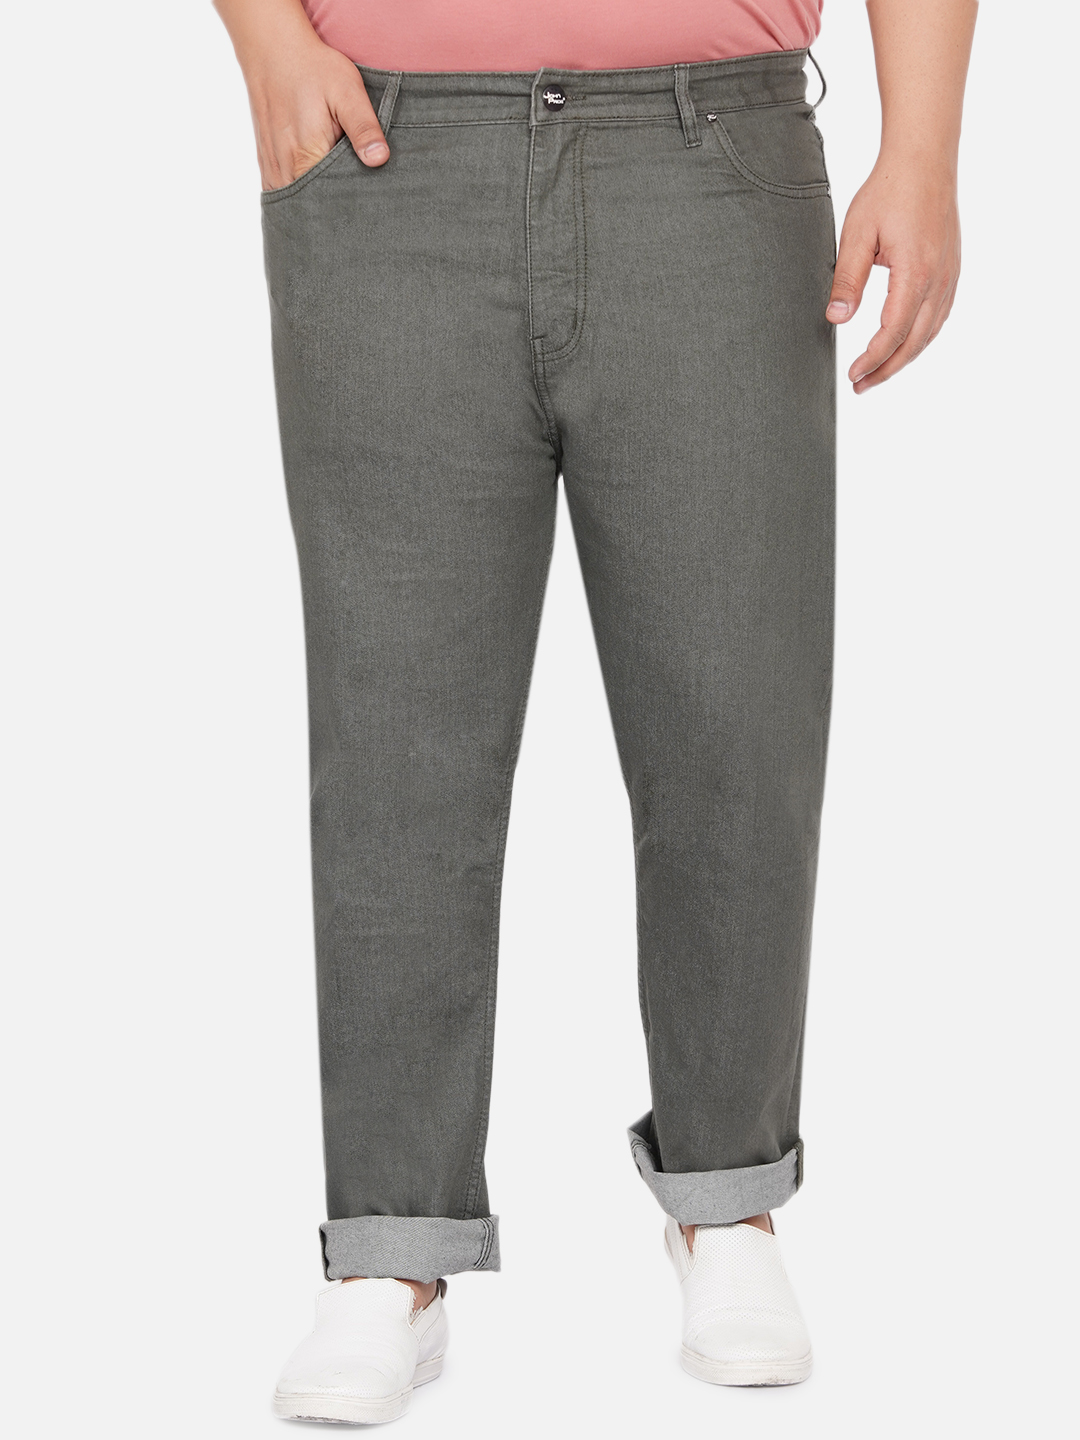 bottomwear/jeans/JPJ12060A/jpj12060a-1.jpg